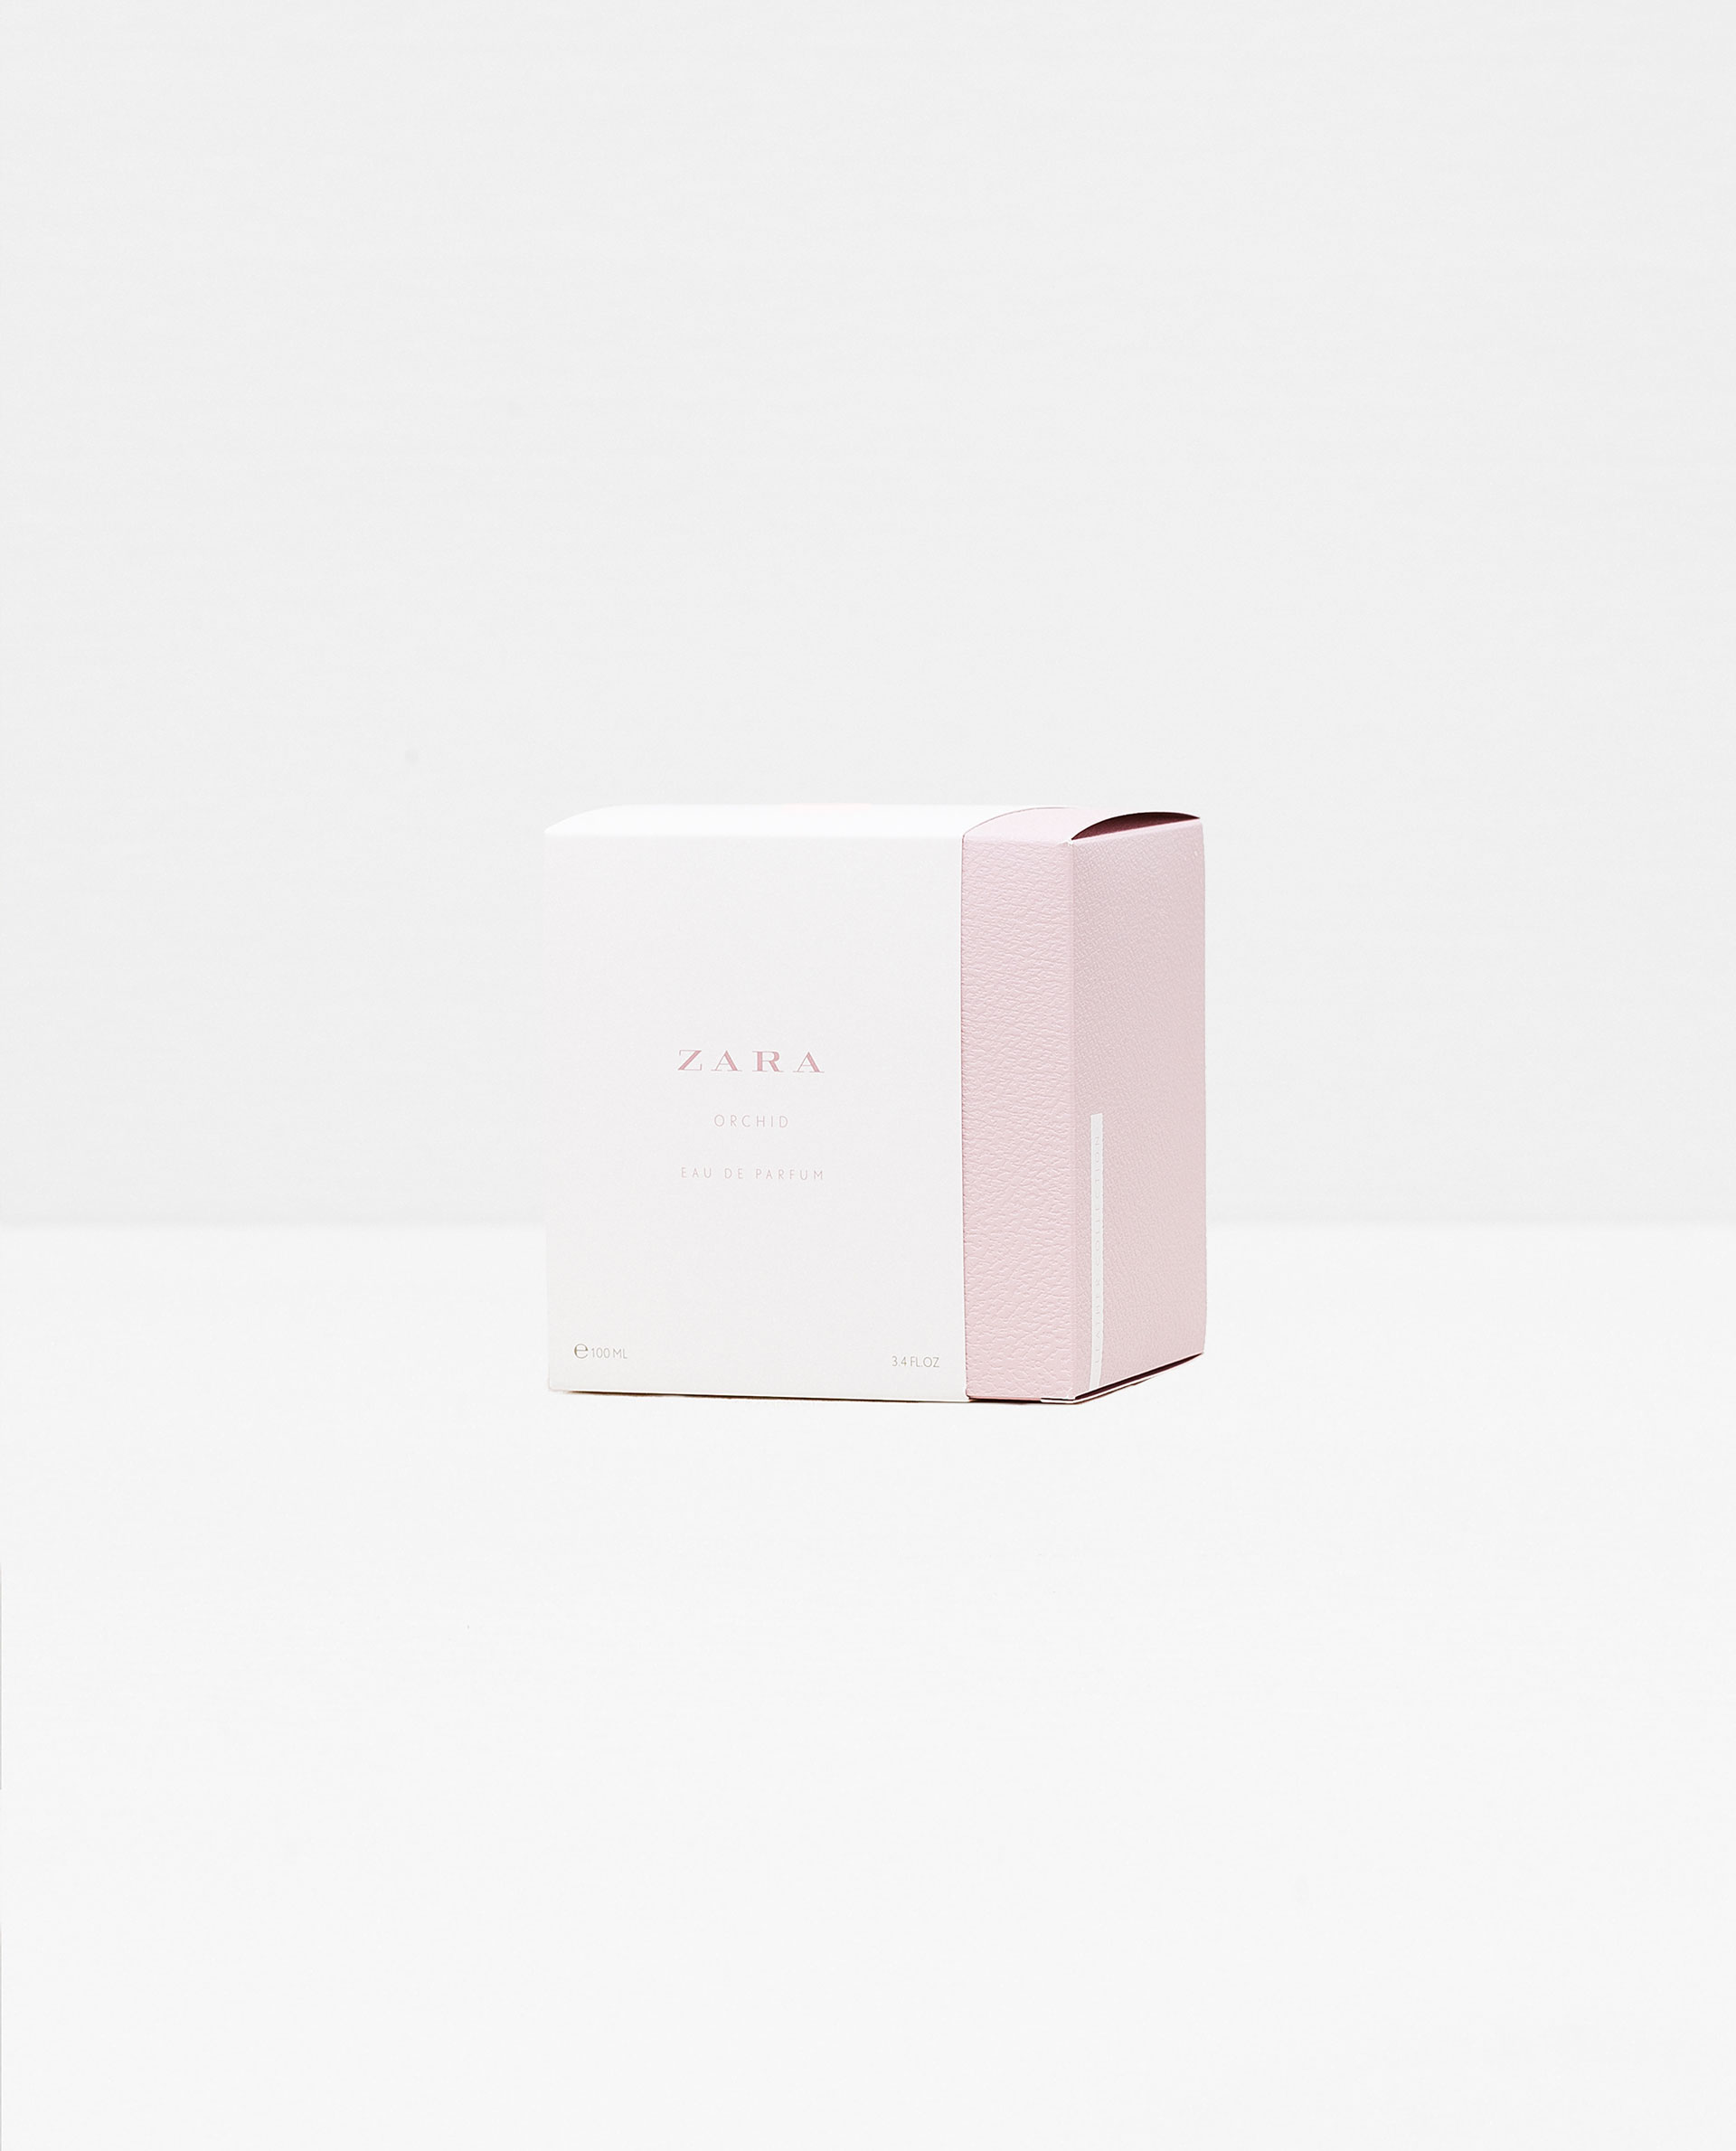 Zara Orchid 2016 Zara parfum - un parfum pour femme 2016